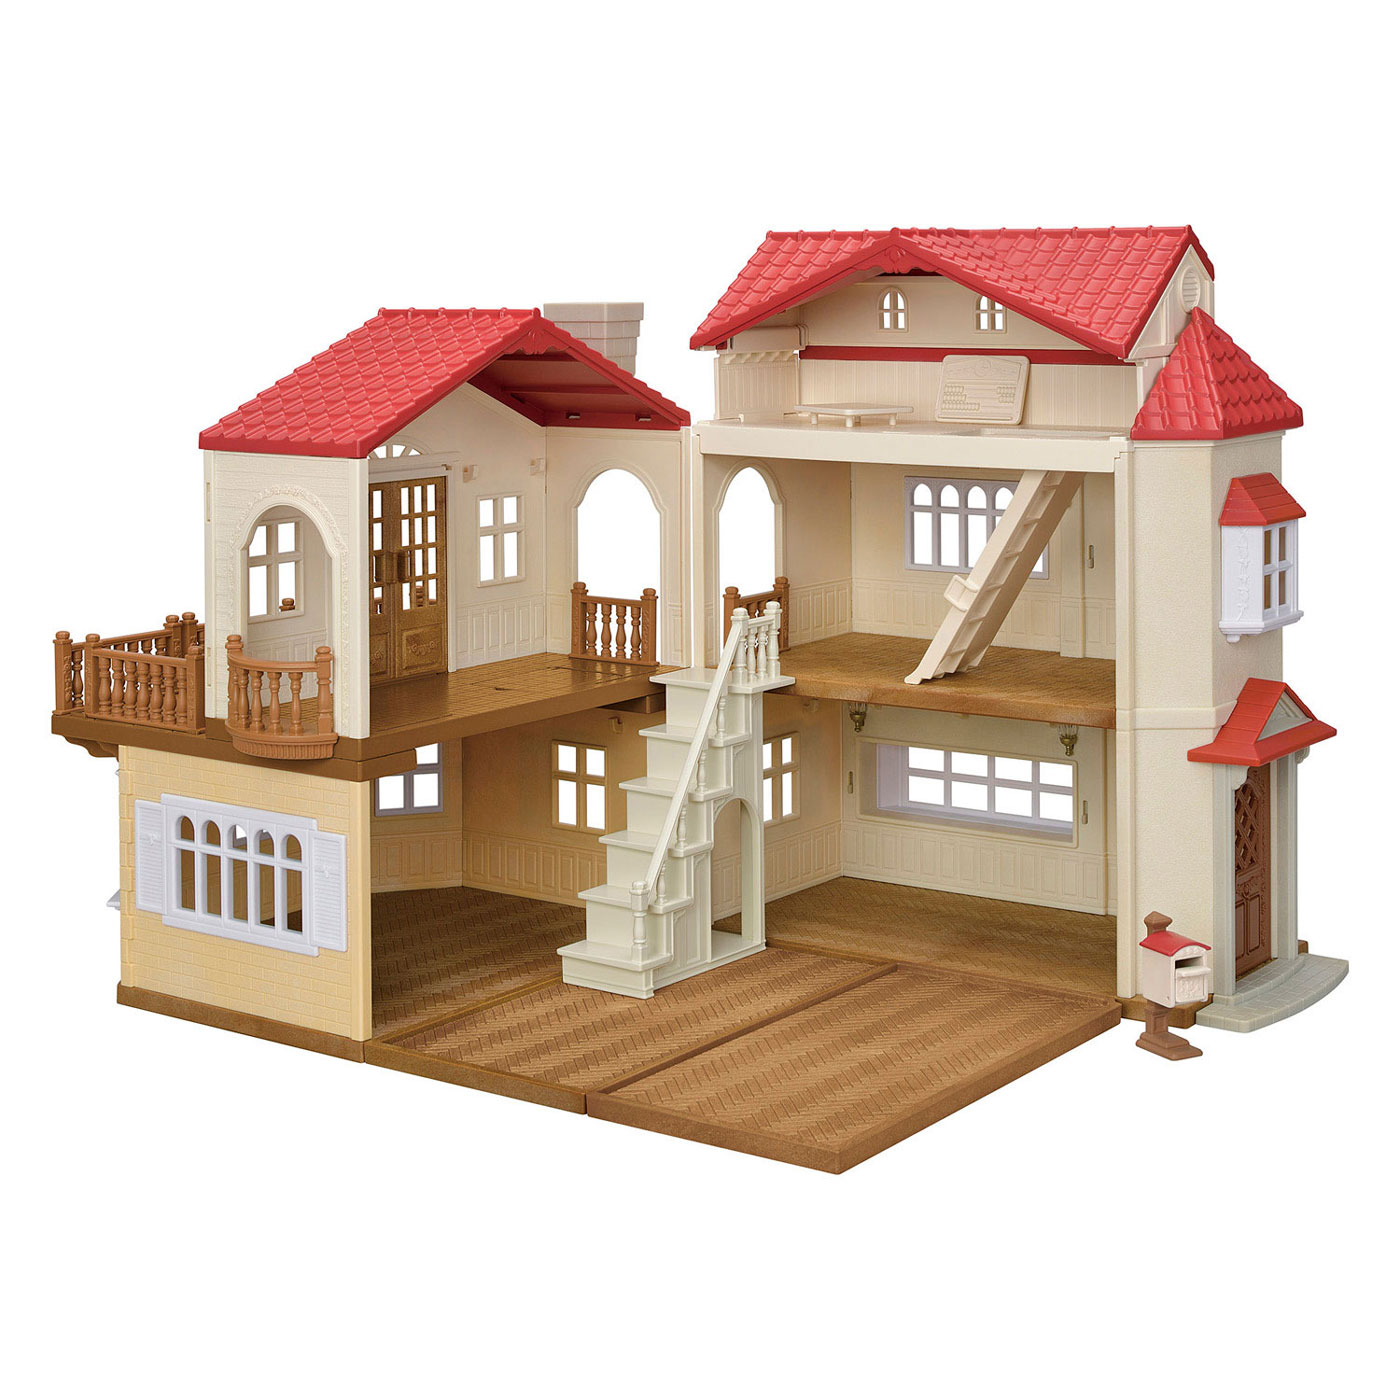 Sylvanian Families Puppenhaus mit geheimem Spielzimmer